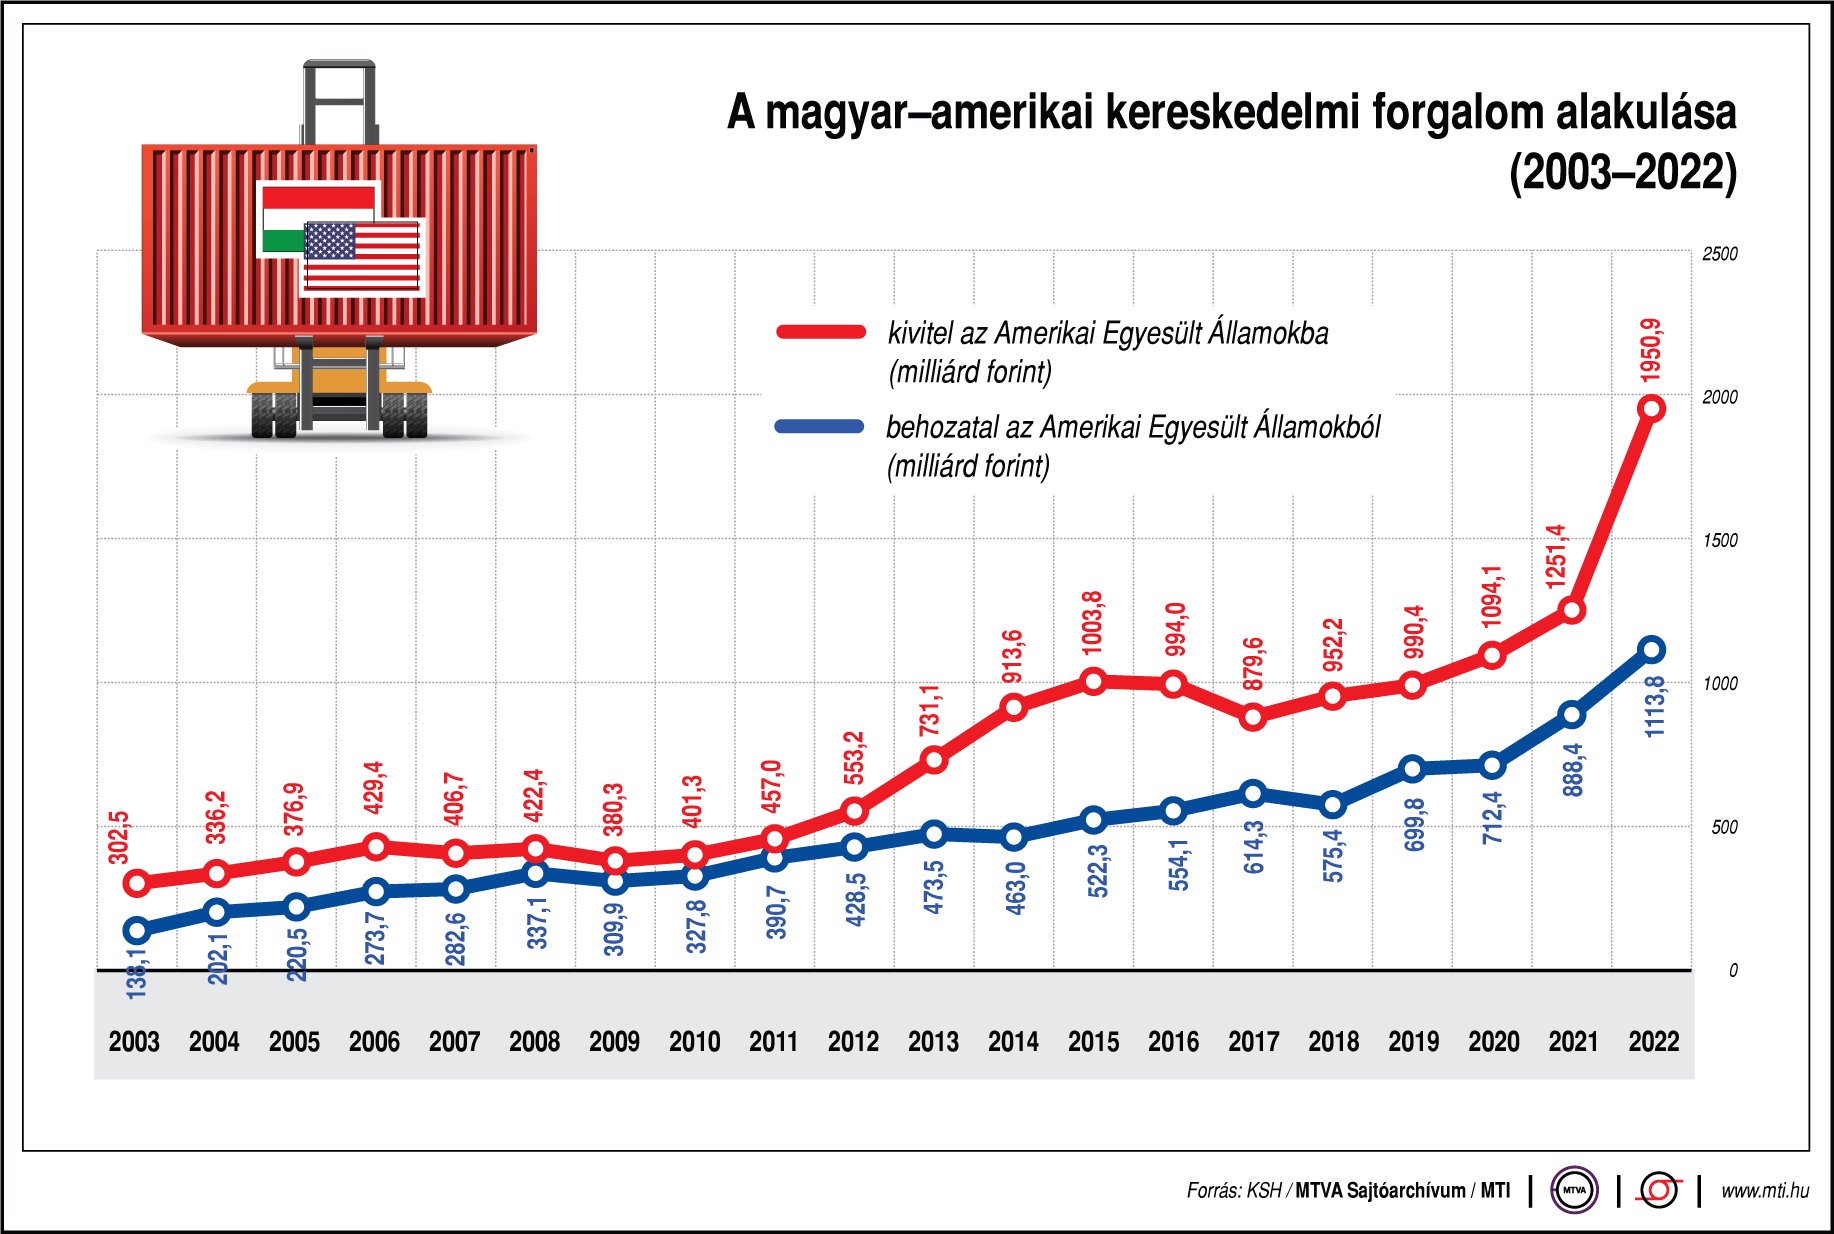 A magyar-amerikai kereskedelmi forgalom alakulása (2022-2023)